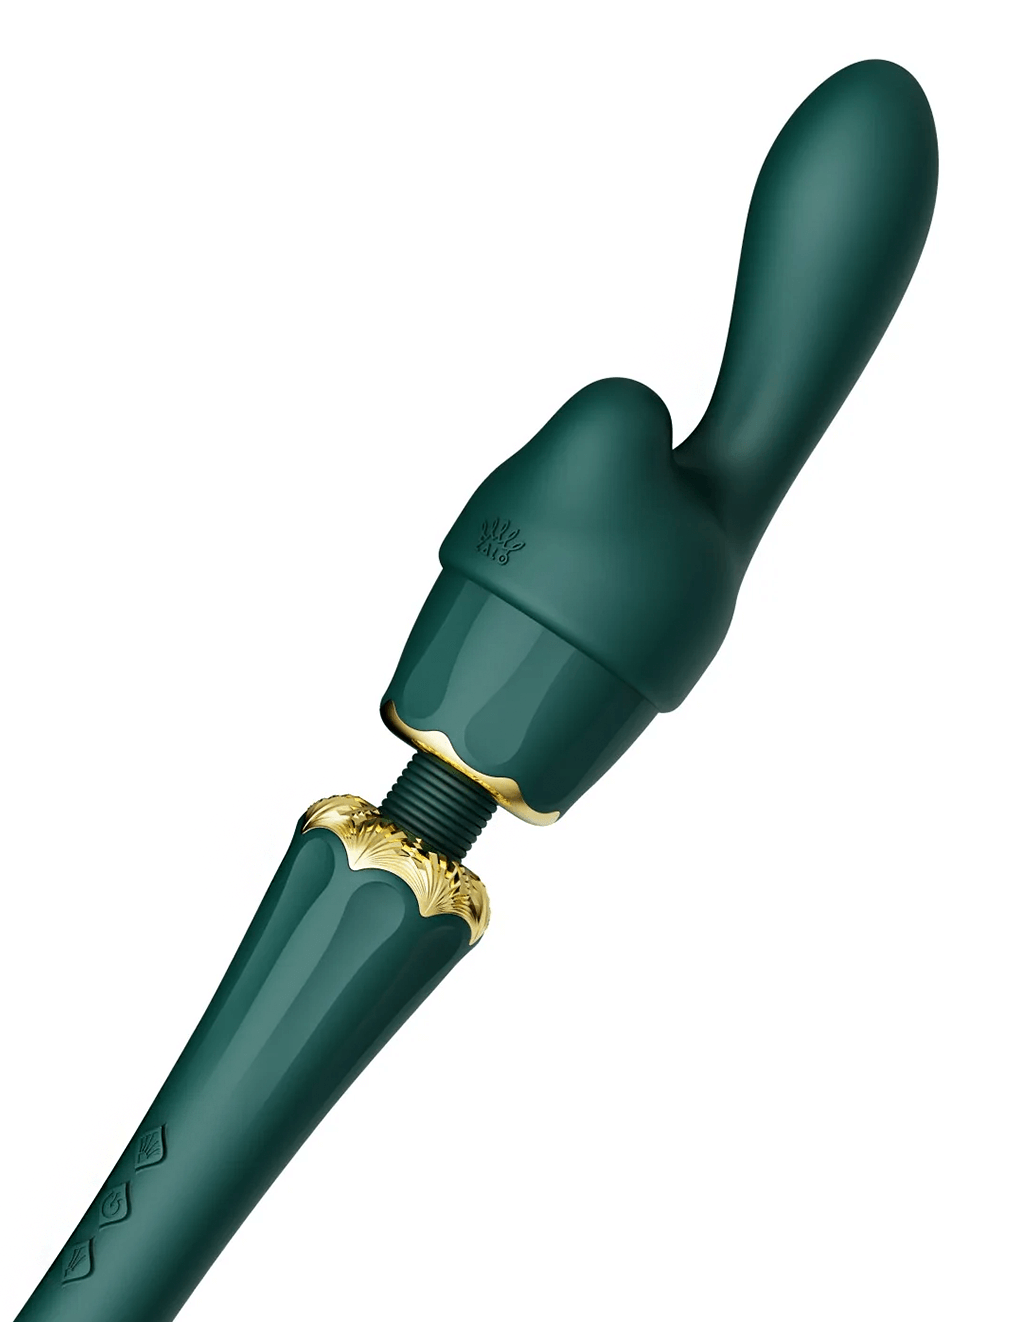 Zalo Kyro - Turquoise Green - Attachment 1